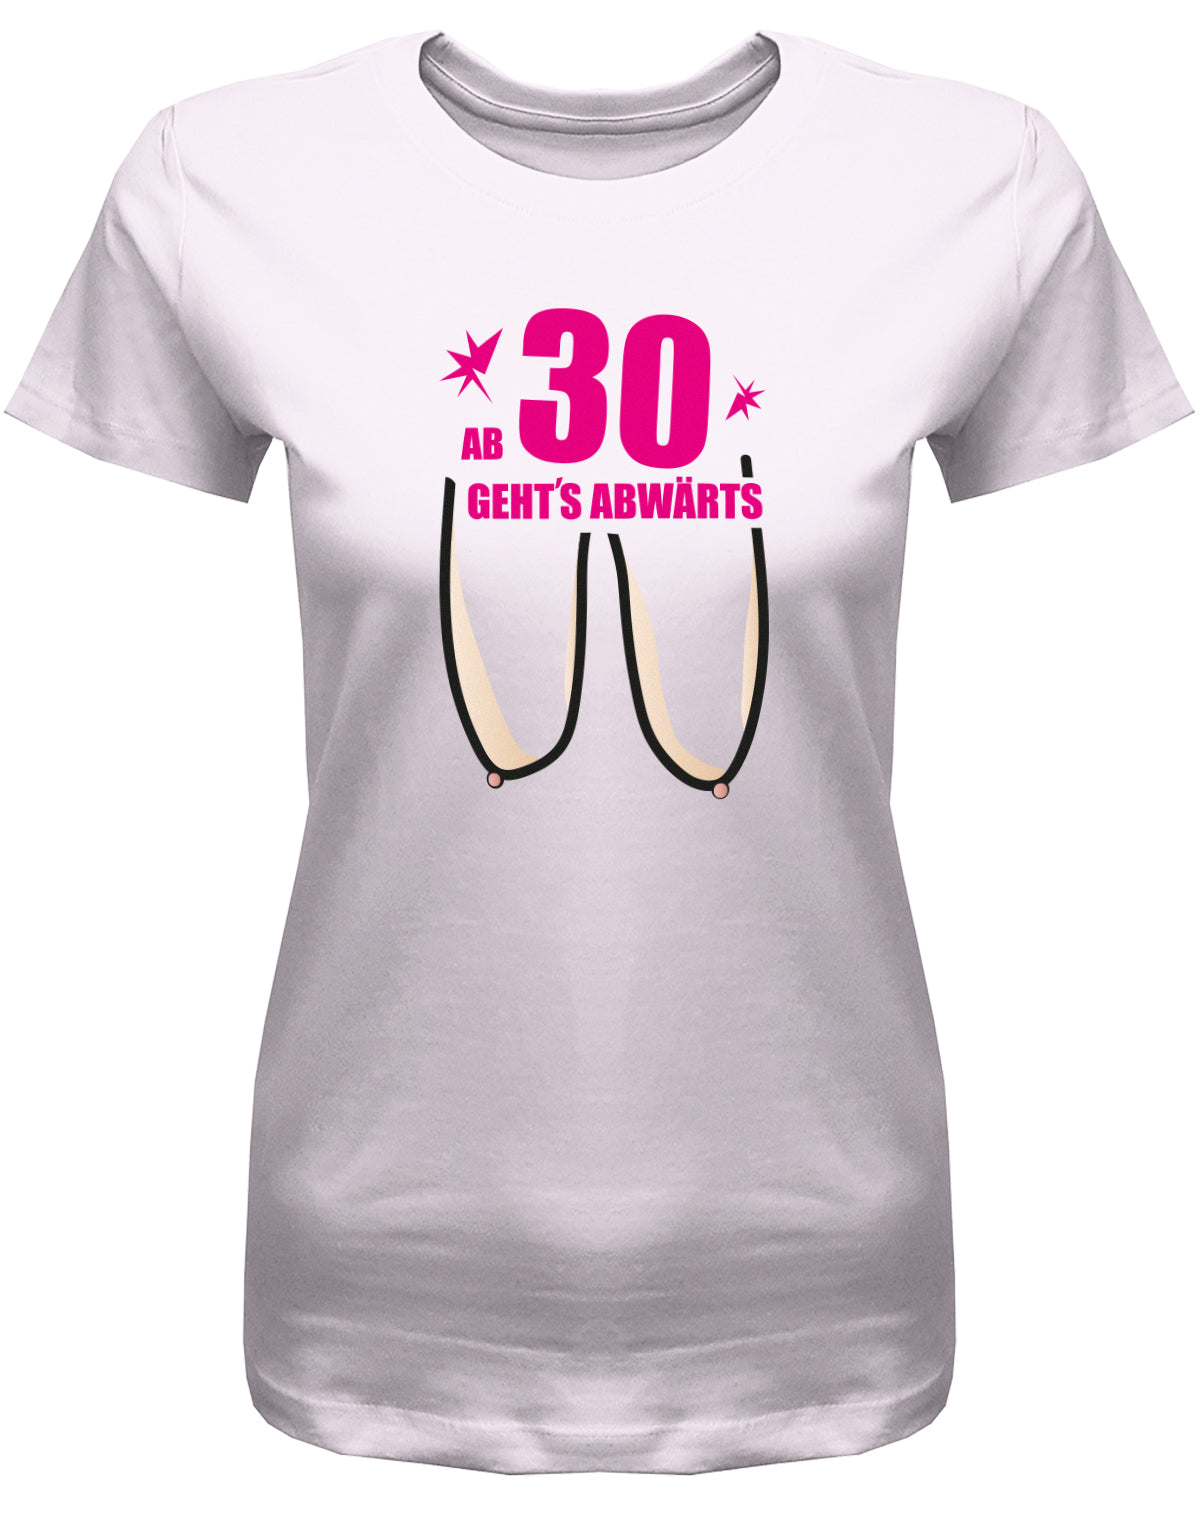 Lustiges T-Shirt zum 30. Geburtstag für die Frau Bedruckt mit: Hänge Brüste ab 30 geht´s abwärts. Geschenk zum 30 geburtstag Frau ✓ 1993 geburtstag Frau ✓ 30 Geburtstag tshirt ✓ shirt geburtstag 30 Roa